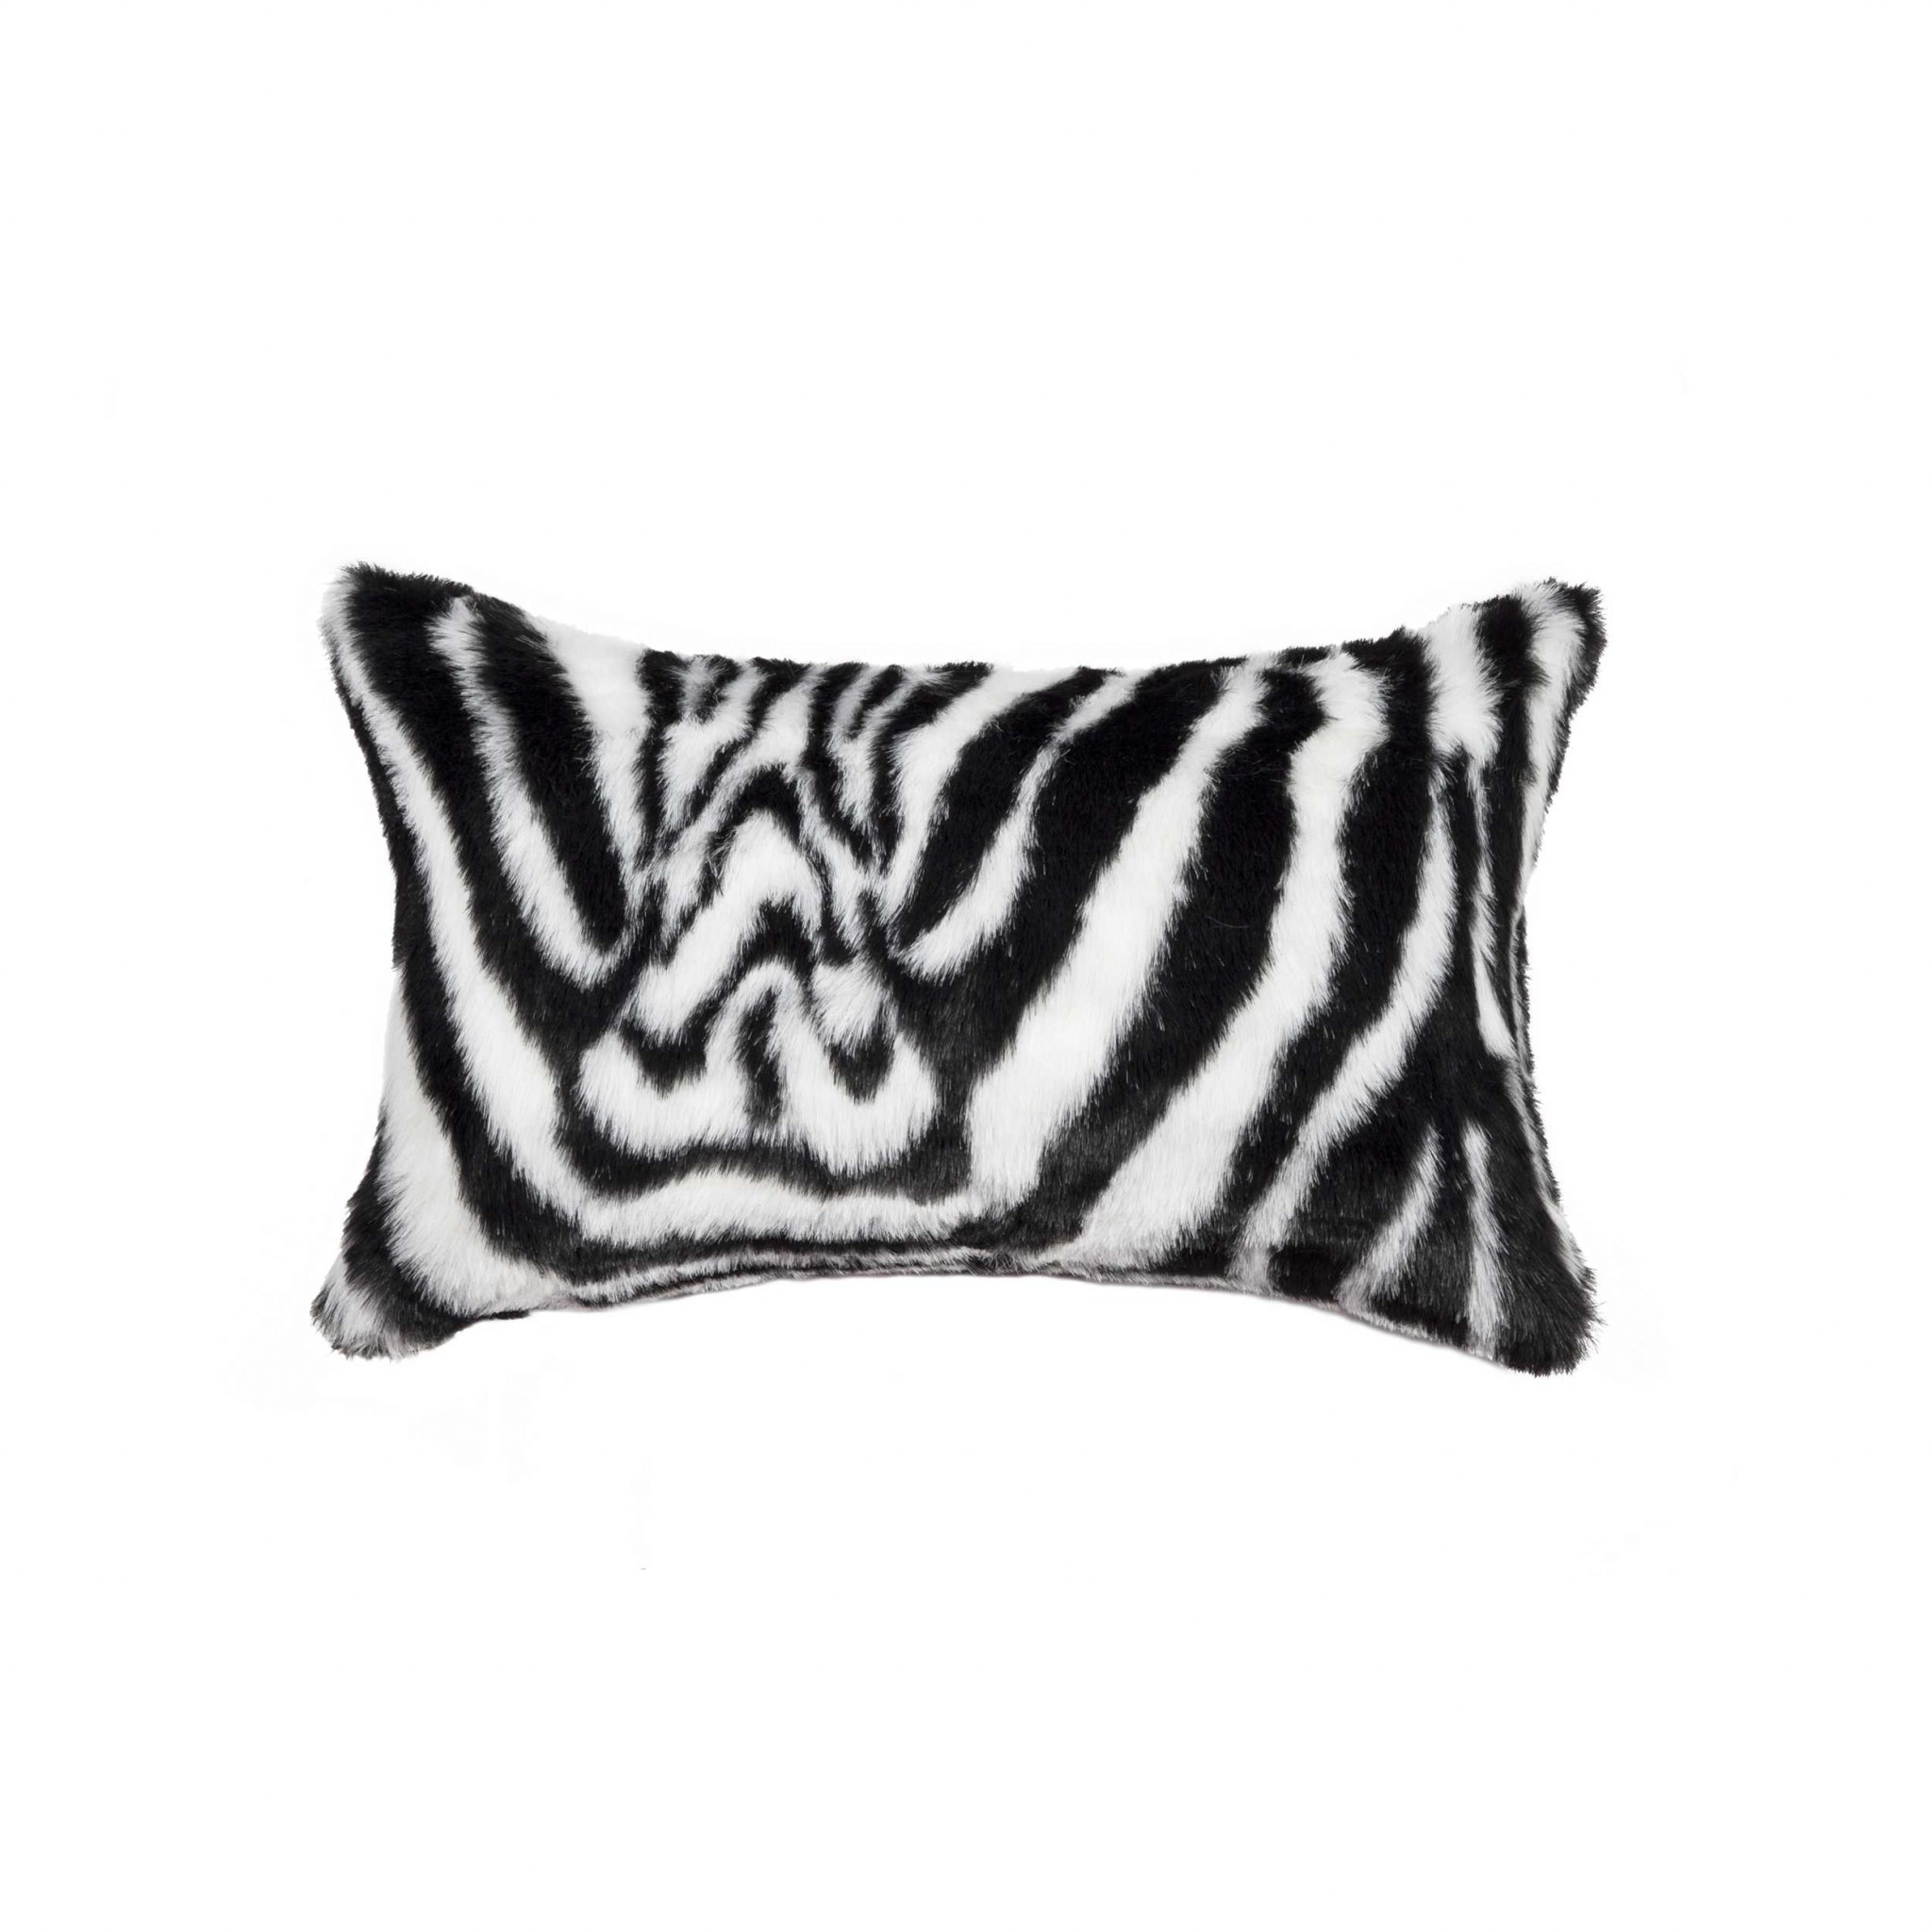 12" x 20" x 5" Zebra Black & White Faux - Pillow